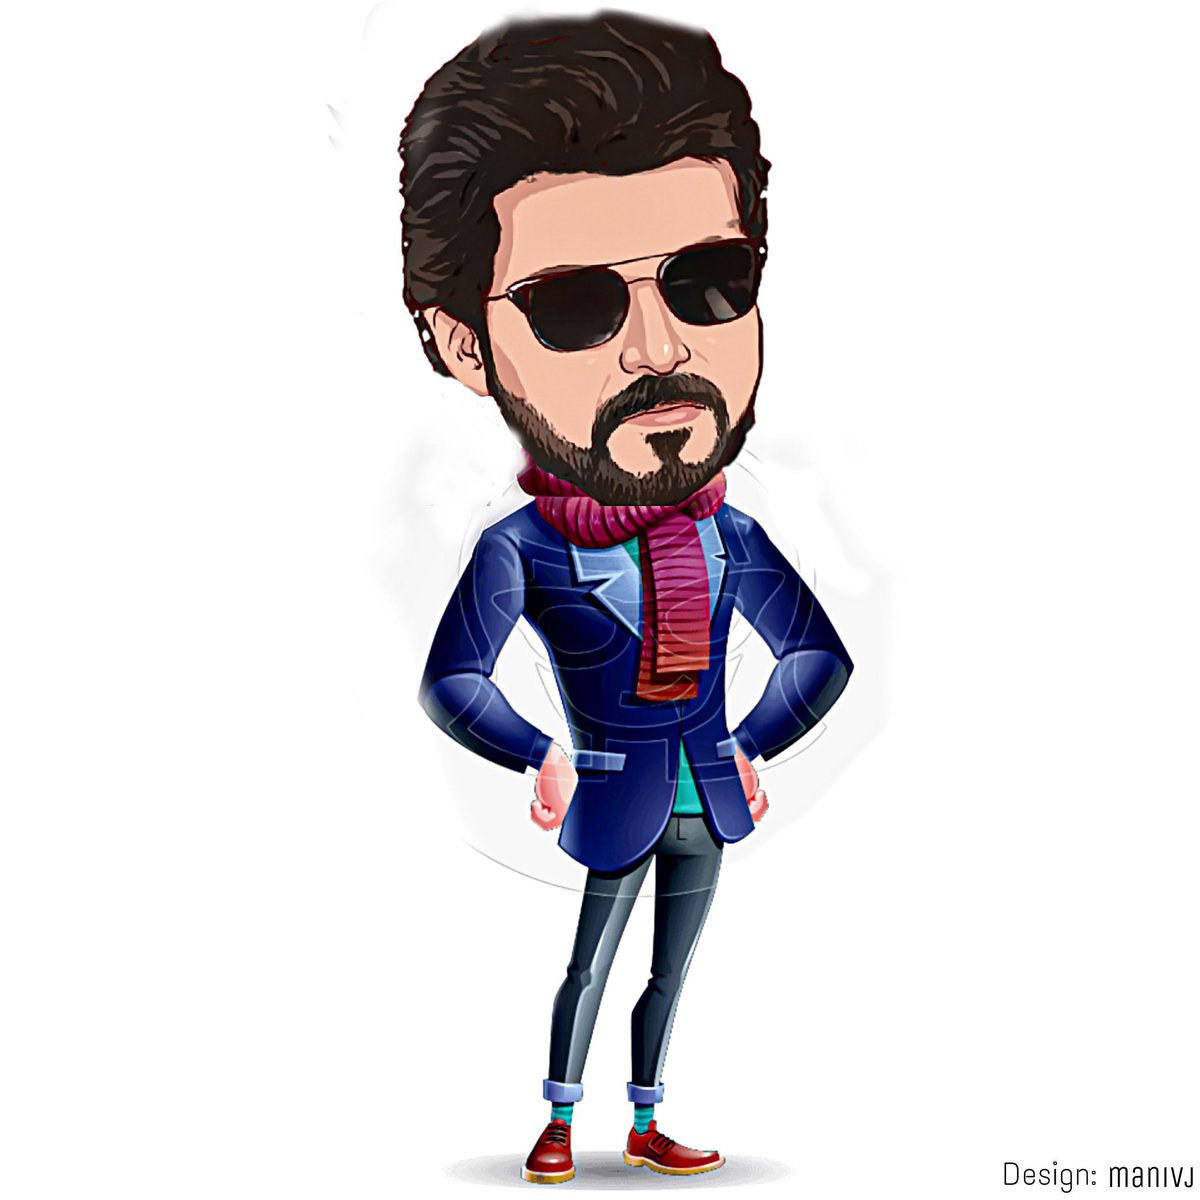 Team Vijay FC on Twitter: 